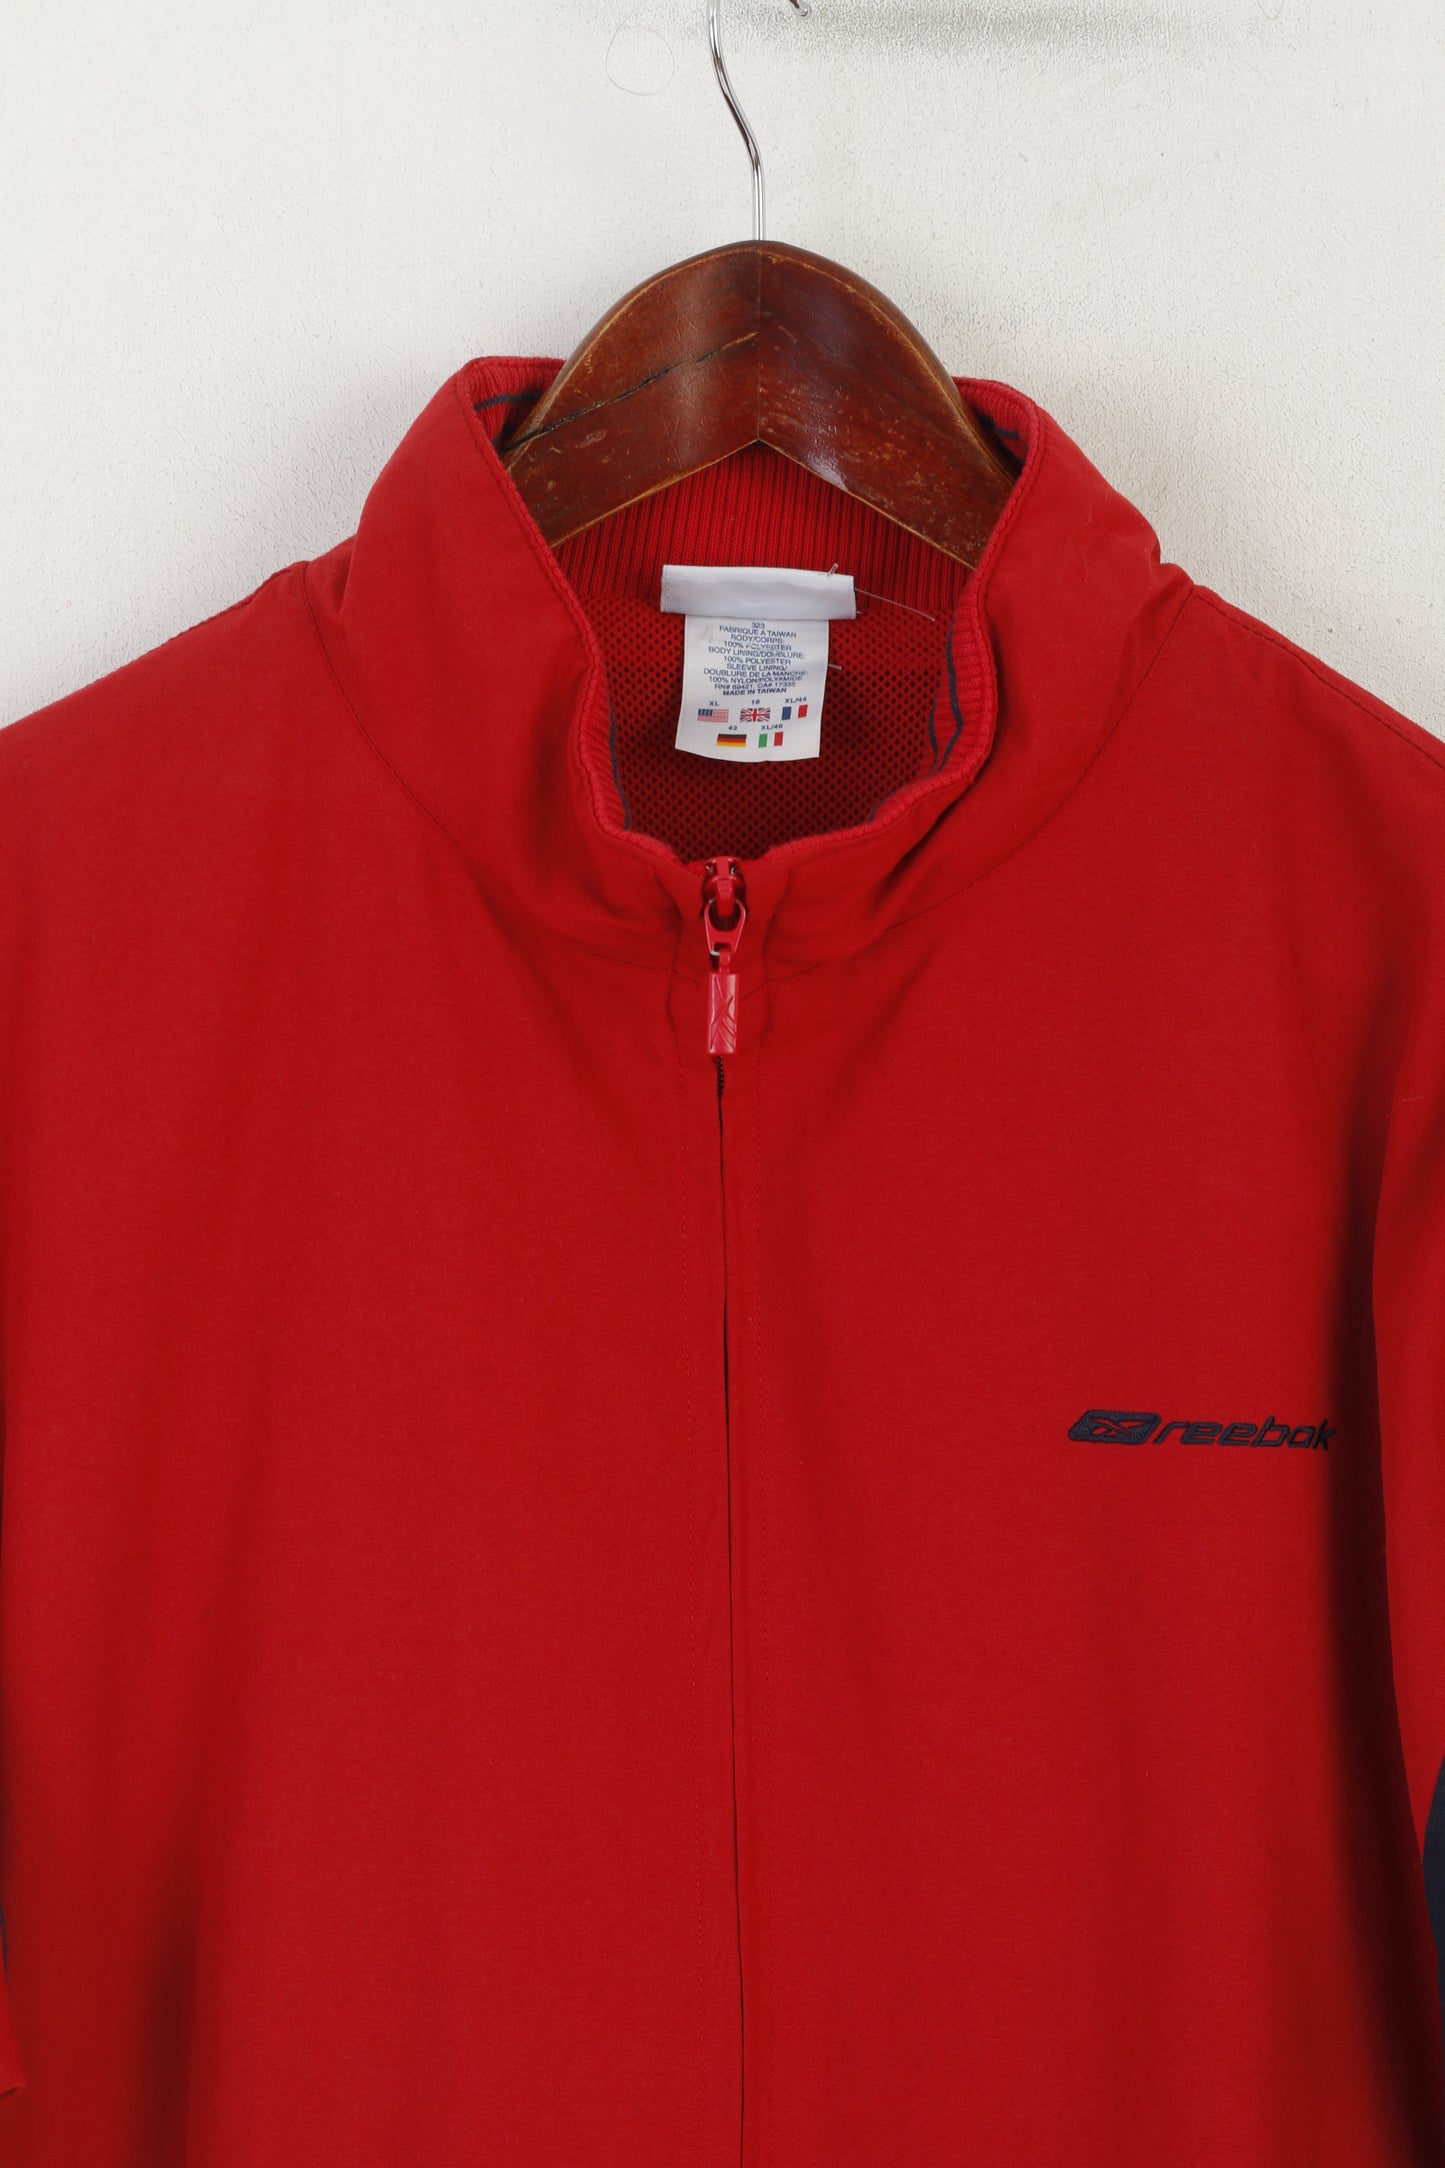 Reebok Women XL 16 Jacket Red Vintage Sportswear Zip Up  Track Top